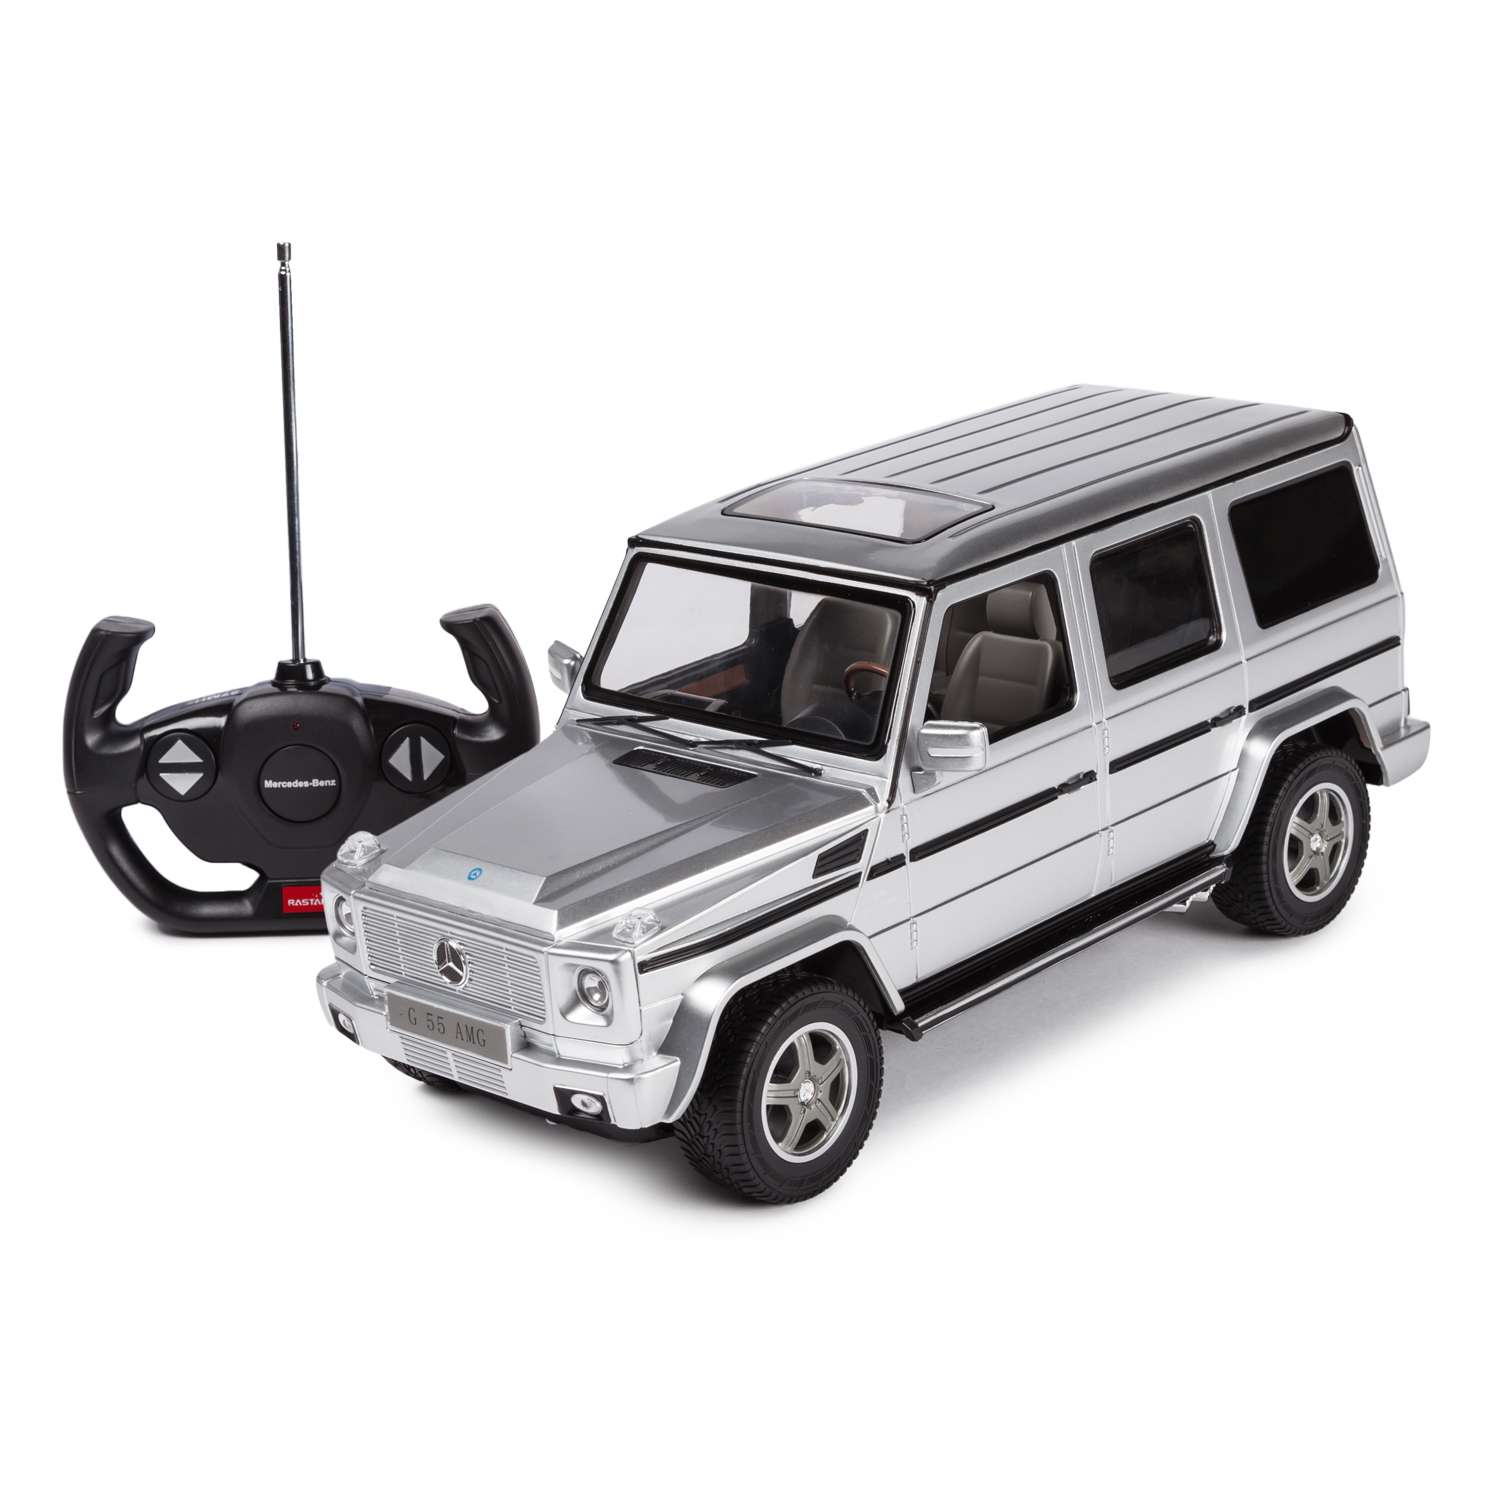 Машинка радиоуправляемая Rastar Mercedes-Benz G55 1:14 серебряная - фото 1